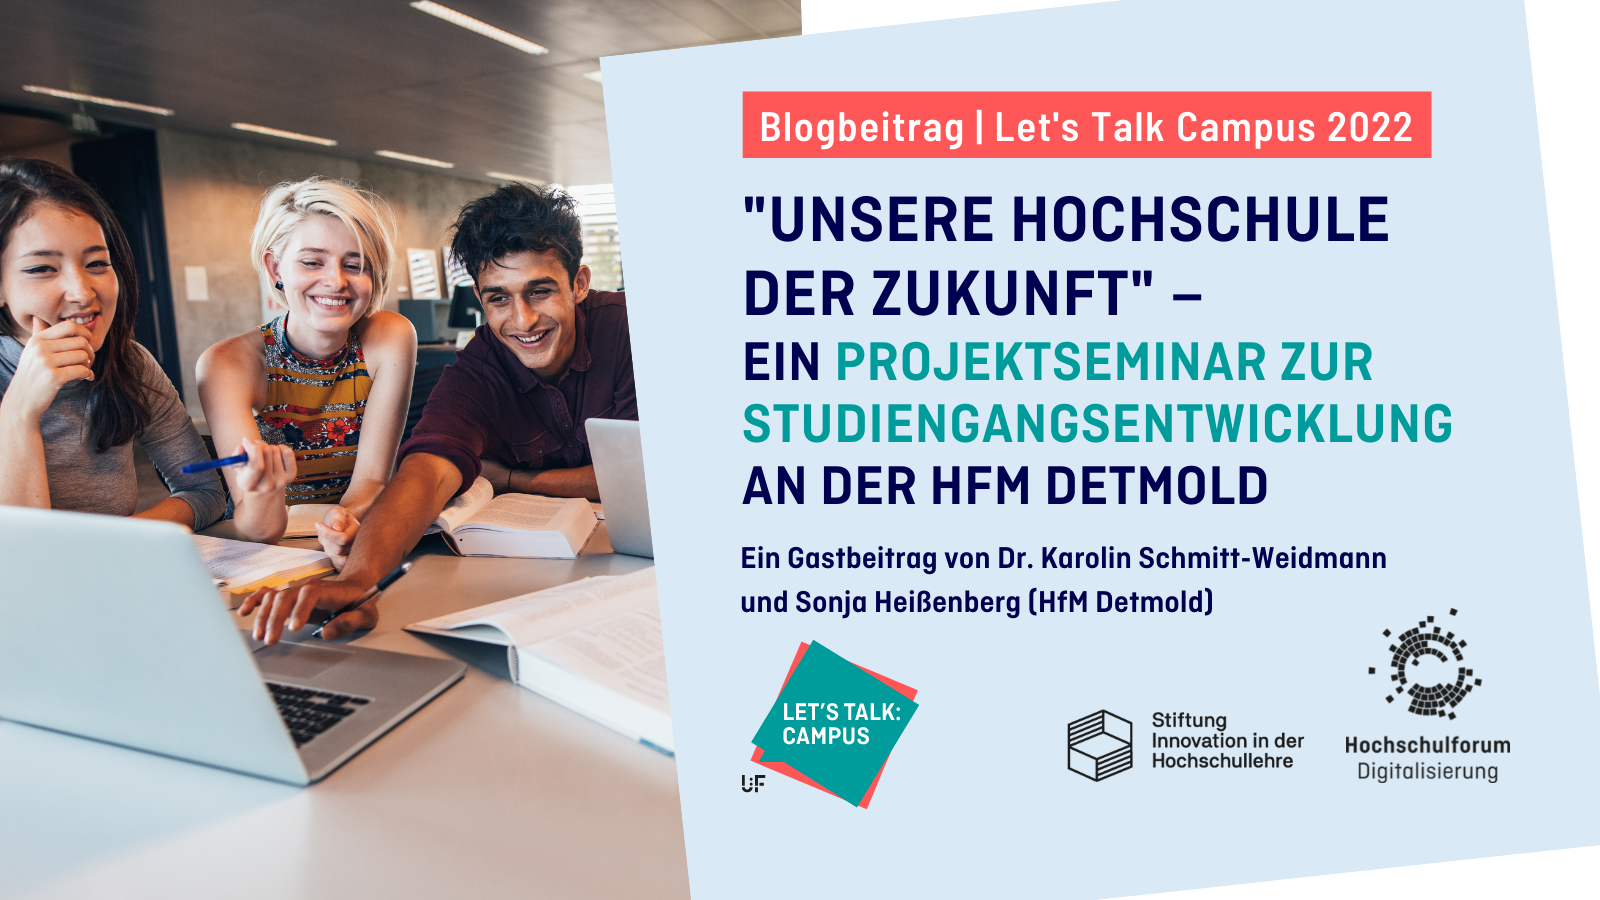 Titelbild: Blogbeitrag zur Reihe "Let's Talk Campus" 2022: "UNSERE HOCHSCHULE DER ZUKUNFT" – EIN PROJEKTSEMINAR ZUR STUDIENGANGSENTWICKLUNG an der HFM Detmold. Ein Gastbeitrag von Dr. Karolin Schmitt-Weidmann und Sonja Heißenberg (HfM Detmold). Links: Studierende am Tisch schauen gemeinsam und interessiert auf einen gemeinsamen Bildschirm. Rechts Logos: HFD, Lets Talk Campus, Stiftung Innovation in der Hochschullehre.